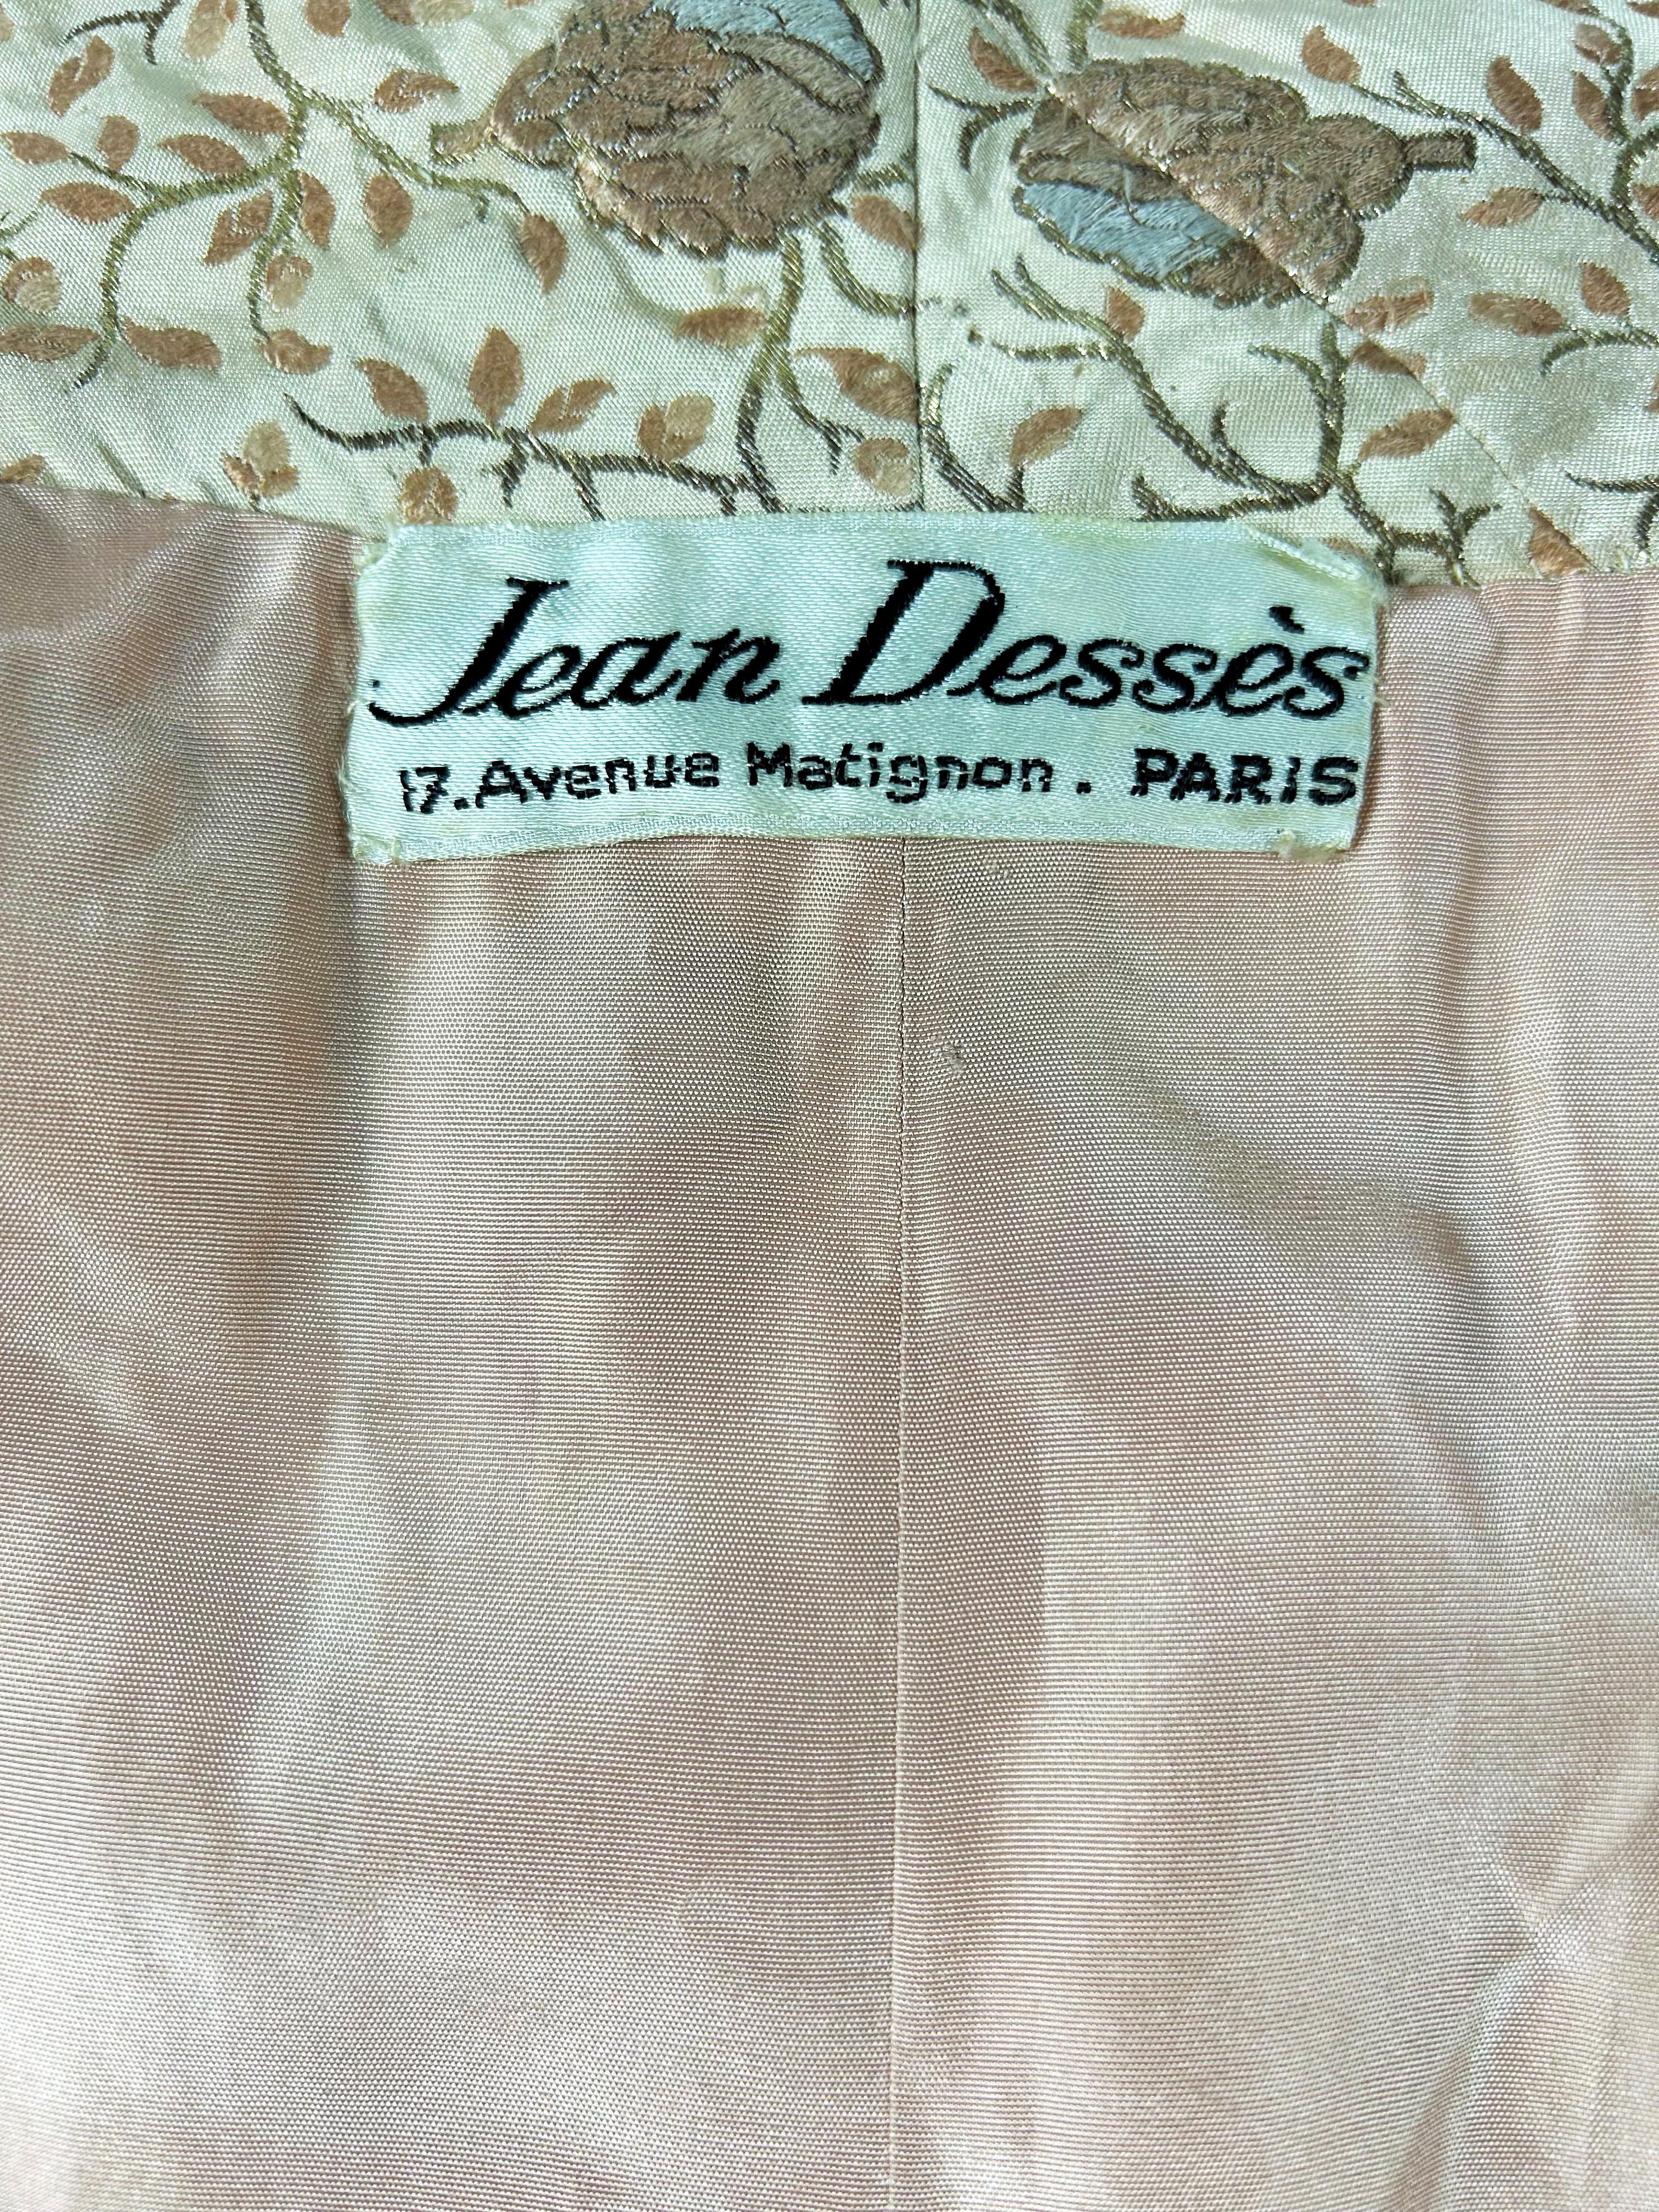 Gold lamé Brocade Evening Coat by Jean Dessès Haute Couture Circa 1955-1960 3